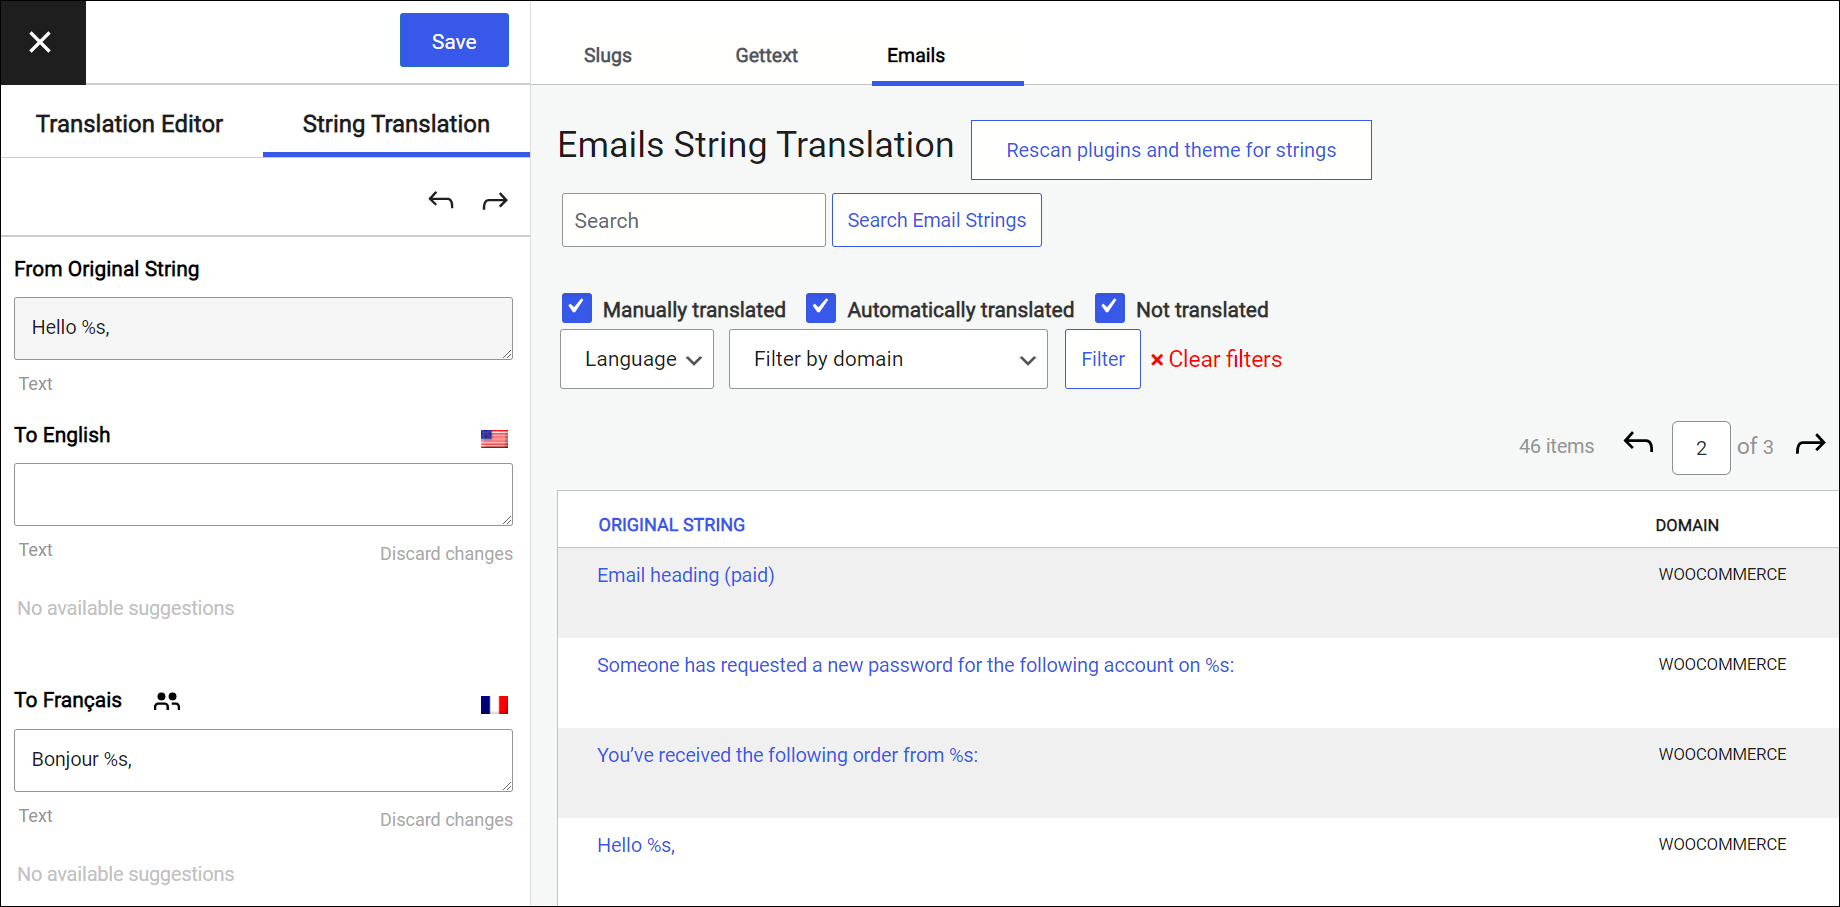 Emails String Translation tab